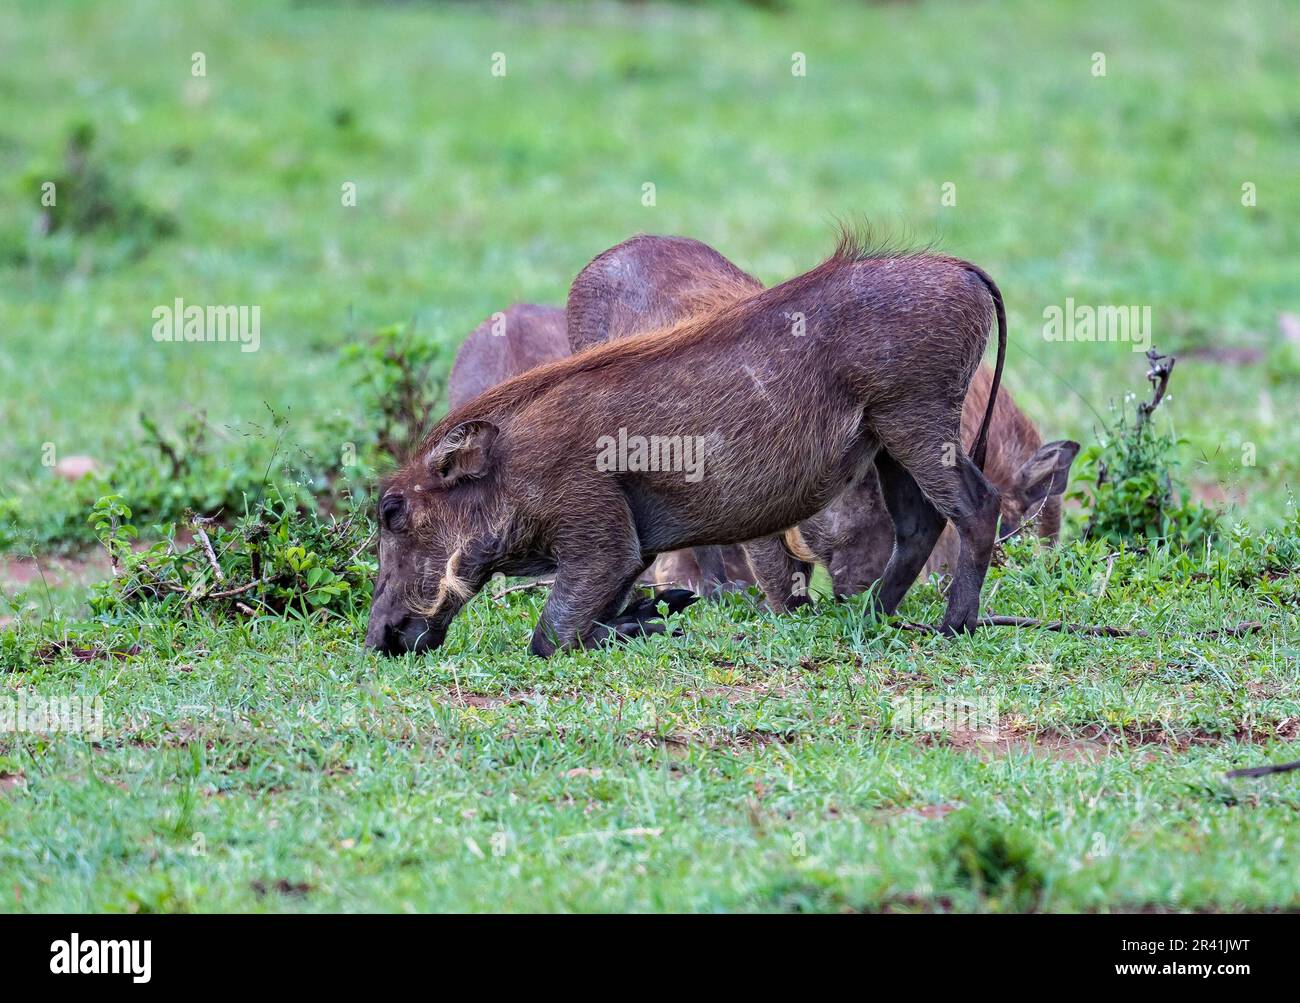 Eine Familiengruppe der gewöhnlichen Warthogs (Phacochoerus africanus), die sich auf einem grünen Grasfeld ernähren. Kenia, Afrika. Stockfoto